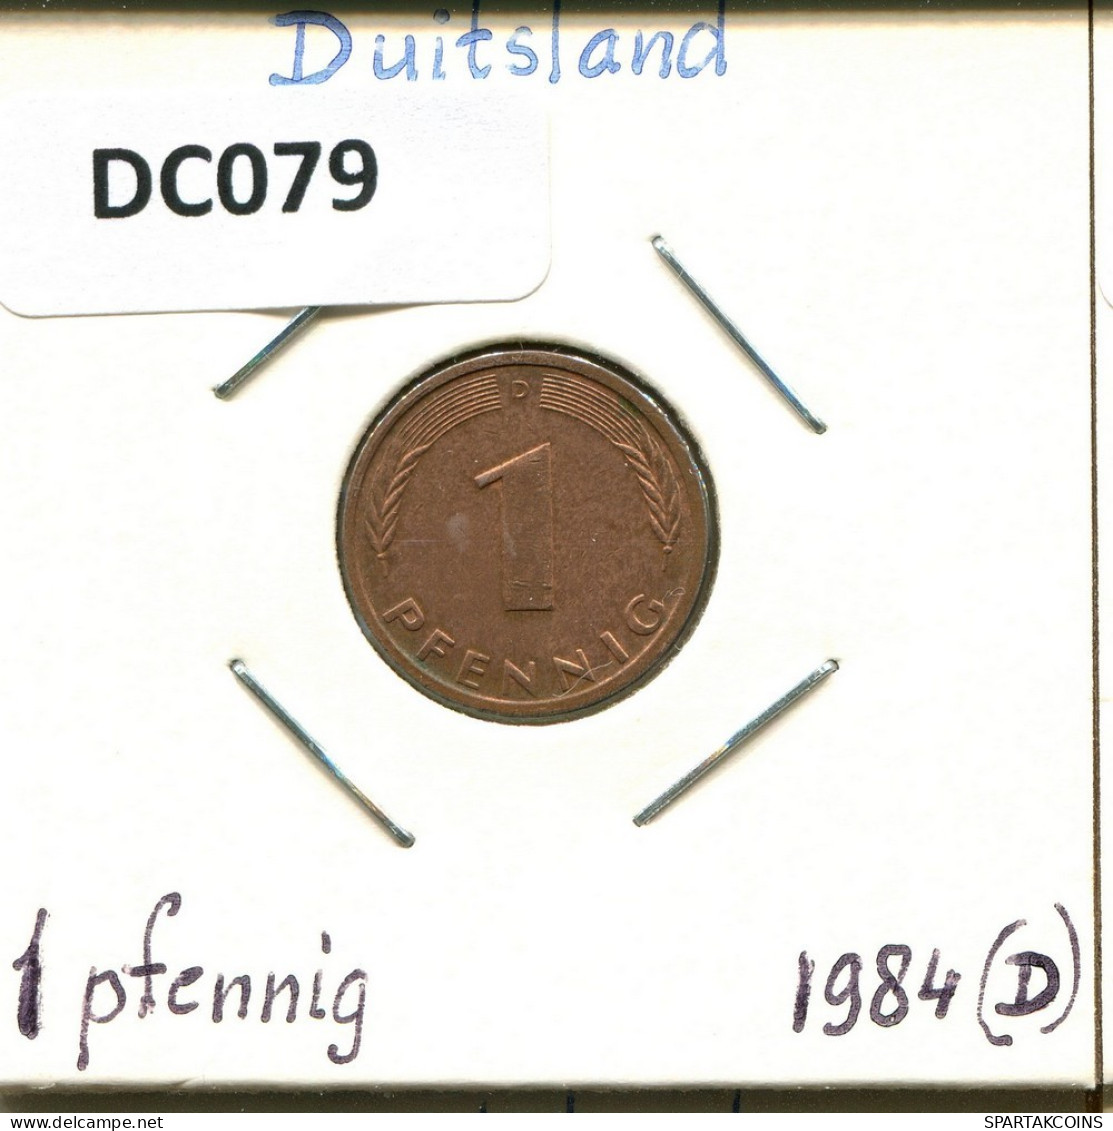 1 PFENNIG 1984 D BRD DEUTSCHLAND Münze GERMANY #DC079.D.A - 1 Pfennig